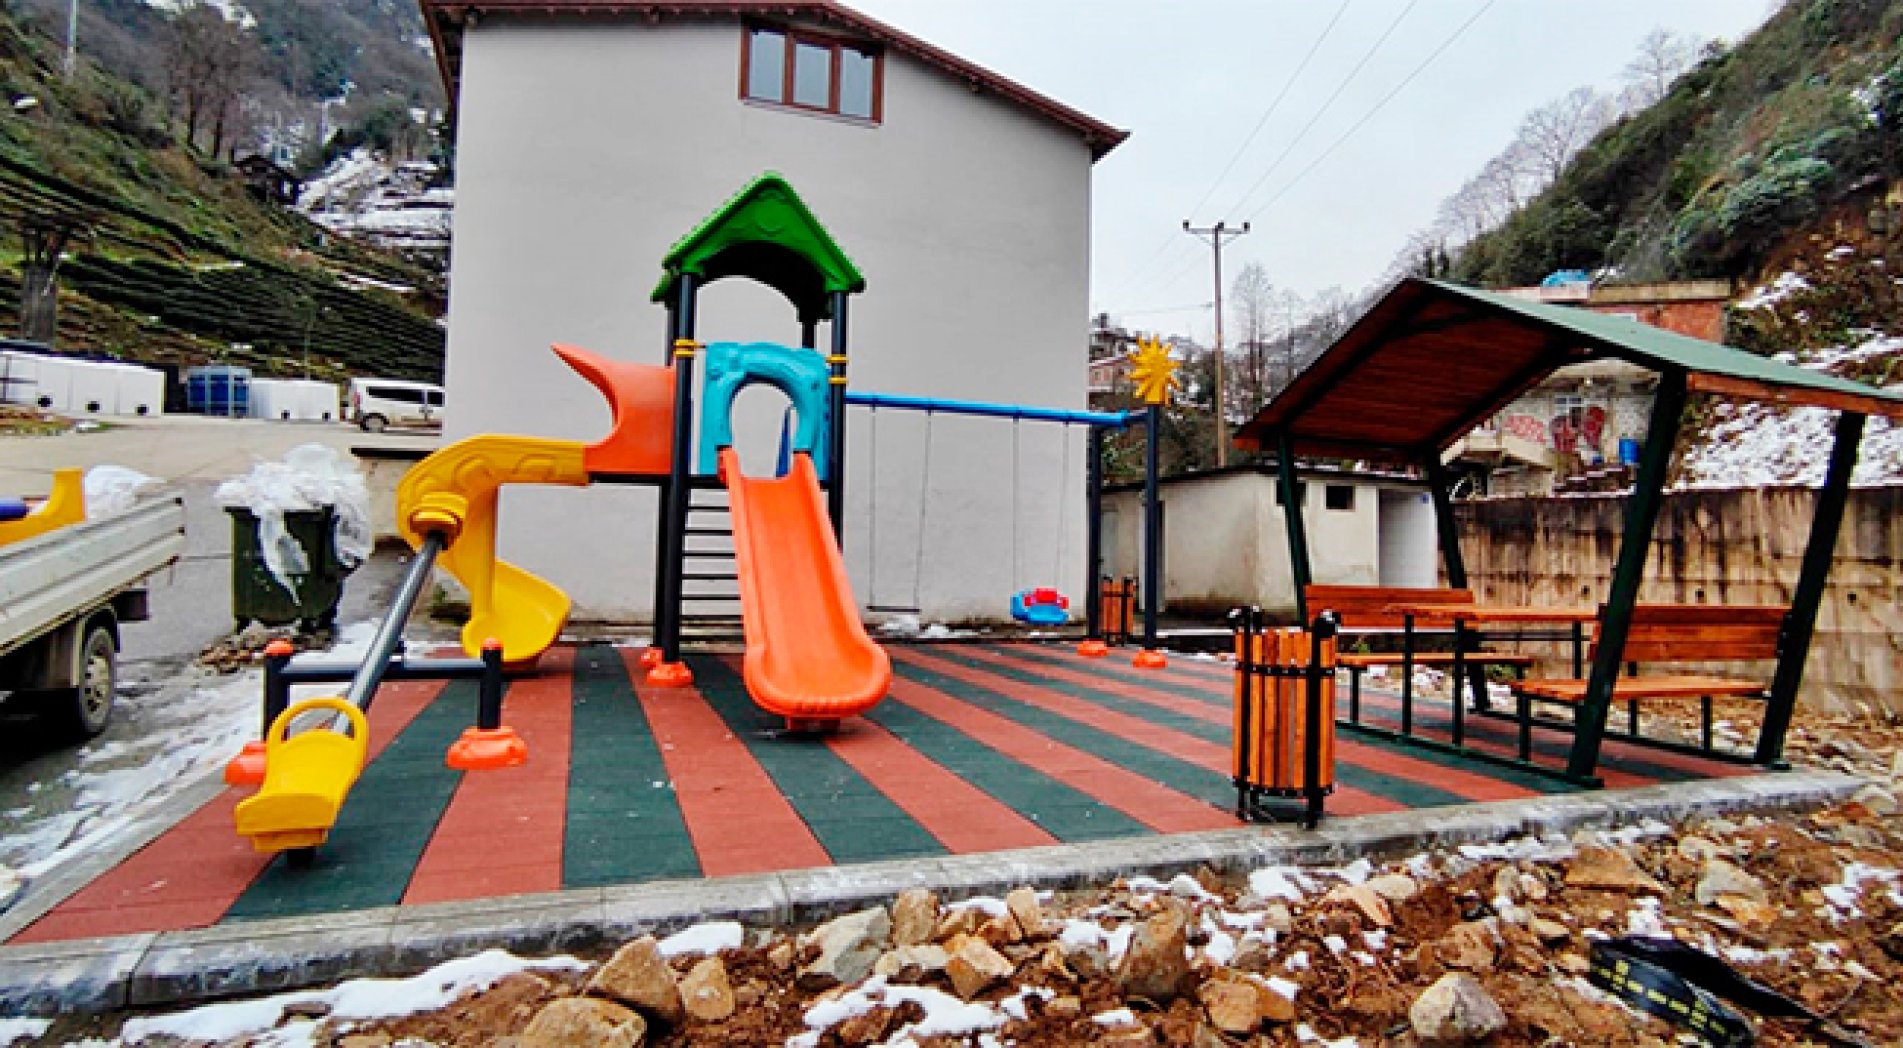 Rize'deki Köylerde Çocuk Oyun Parklarının Sayısı Artıyor